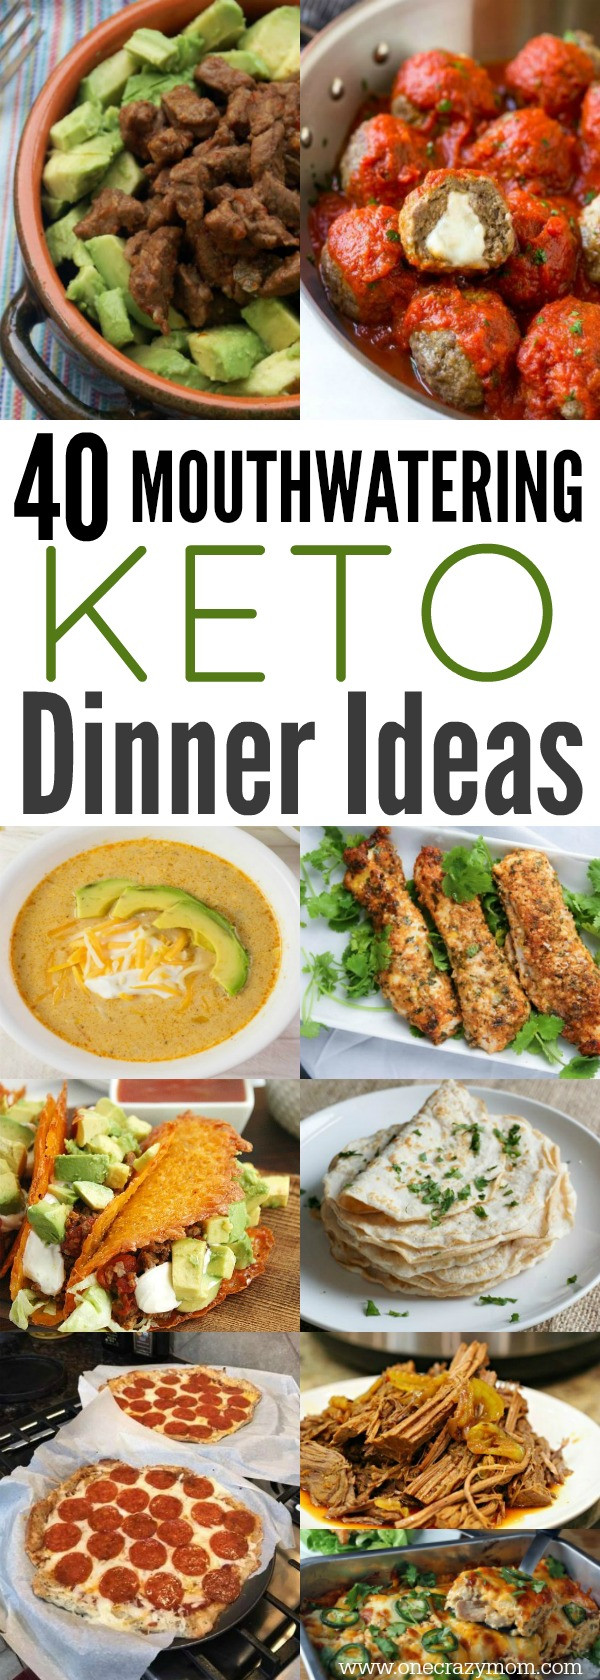 Easy Keto Dinners
 Easy Keto Dinner Ideas 40 Easy Keto Dinner Recipes